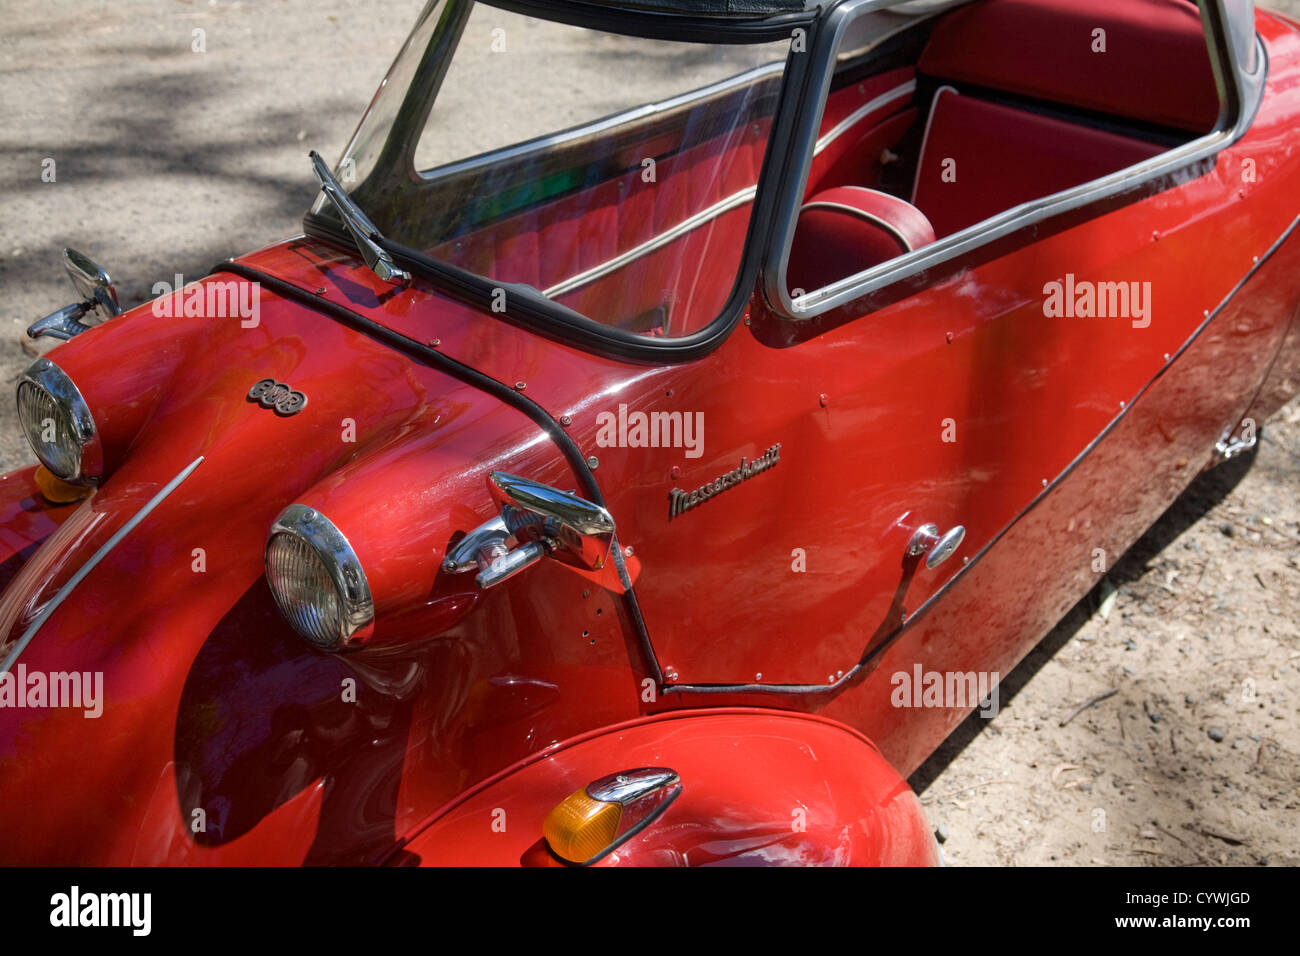 Messerschmitt car in red Stock Photo